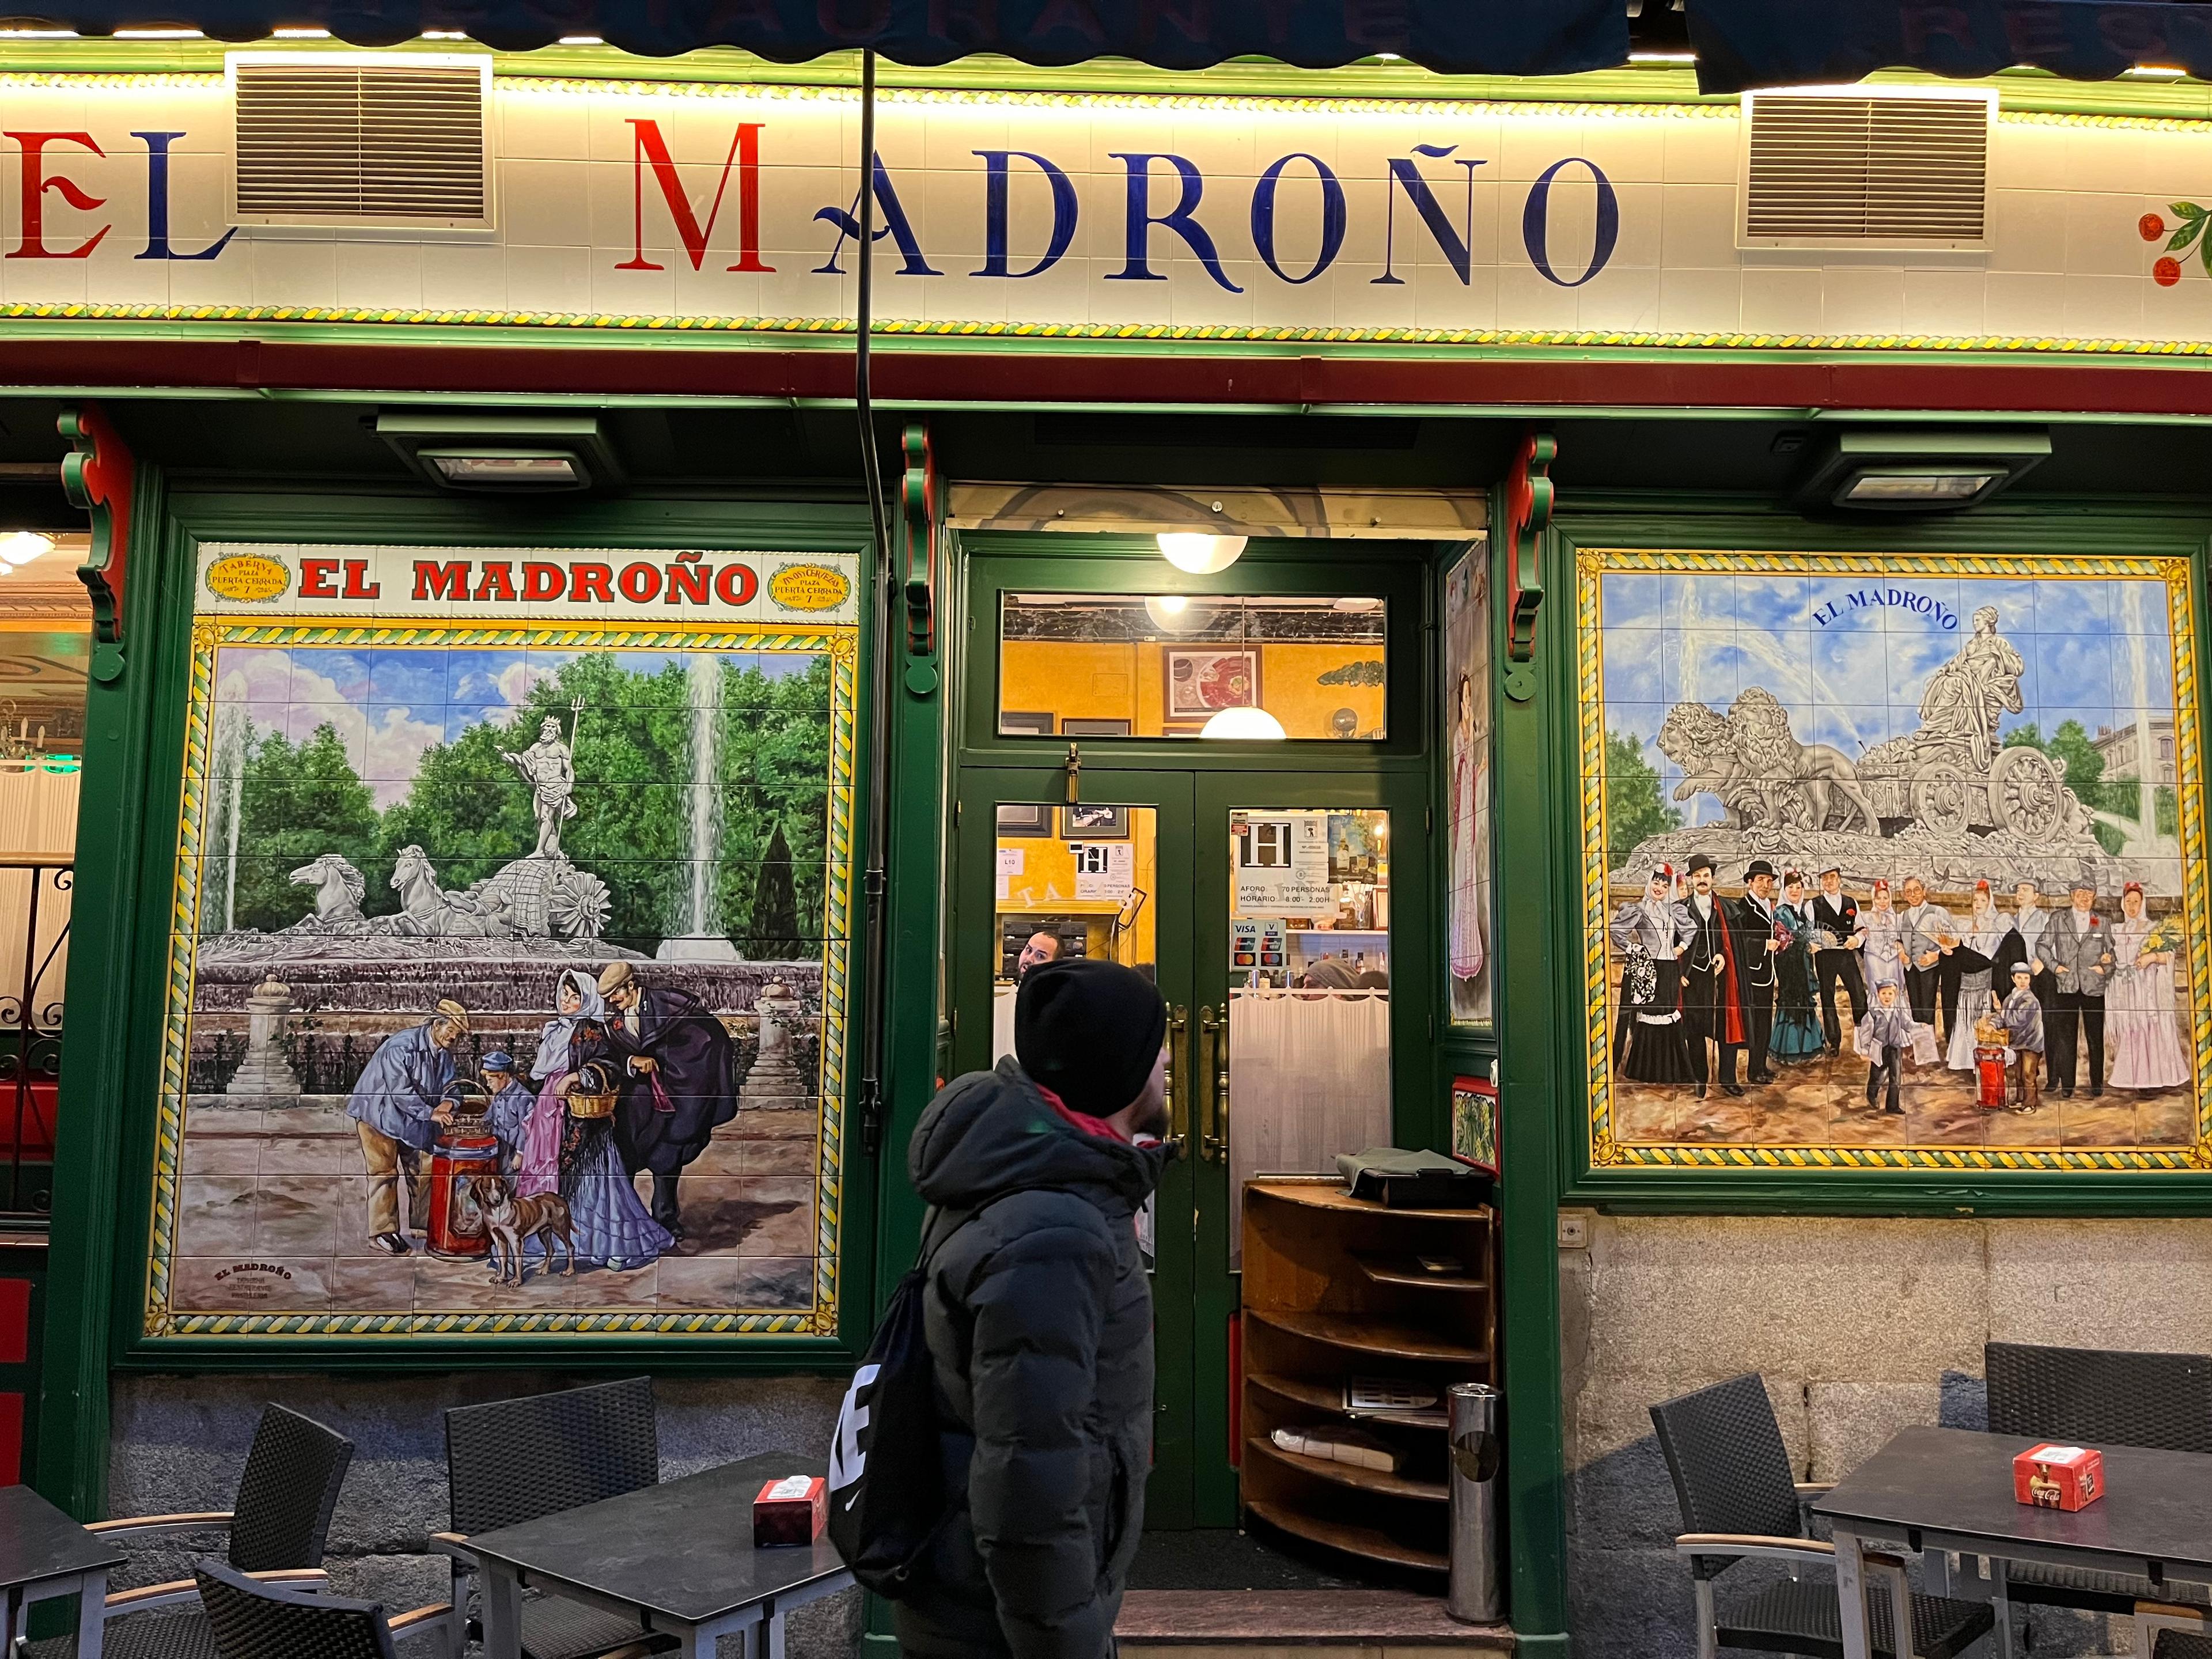 Wejście do tapas baru w Madrycie, zielone drzwi wejściowe z szydlem "El Madrono"